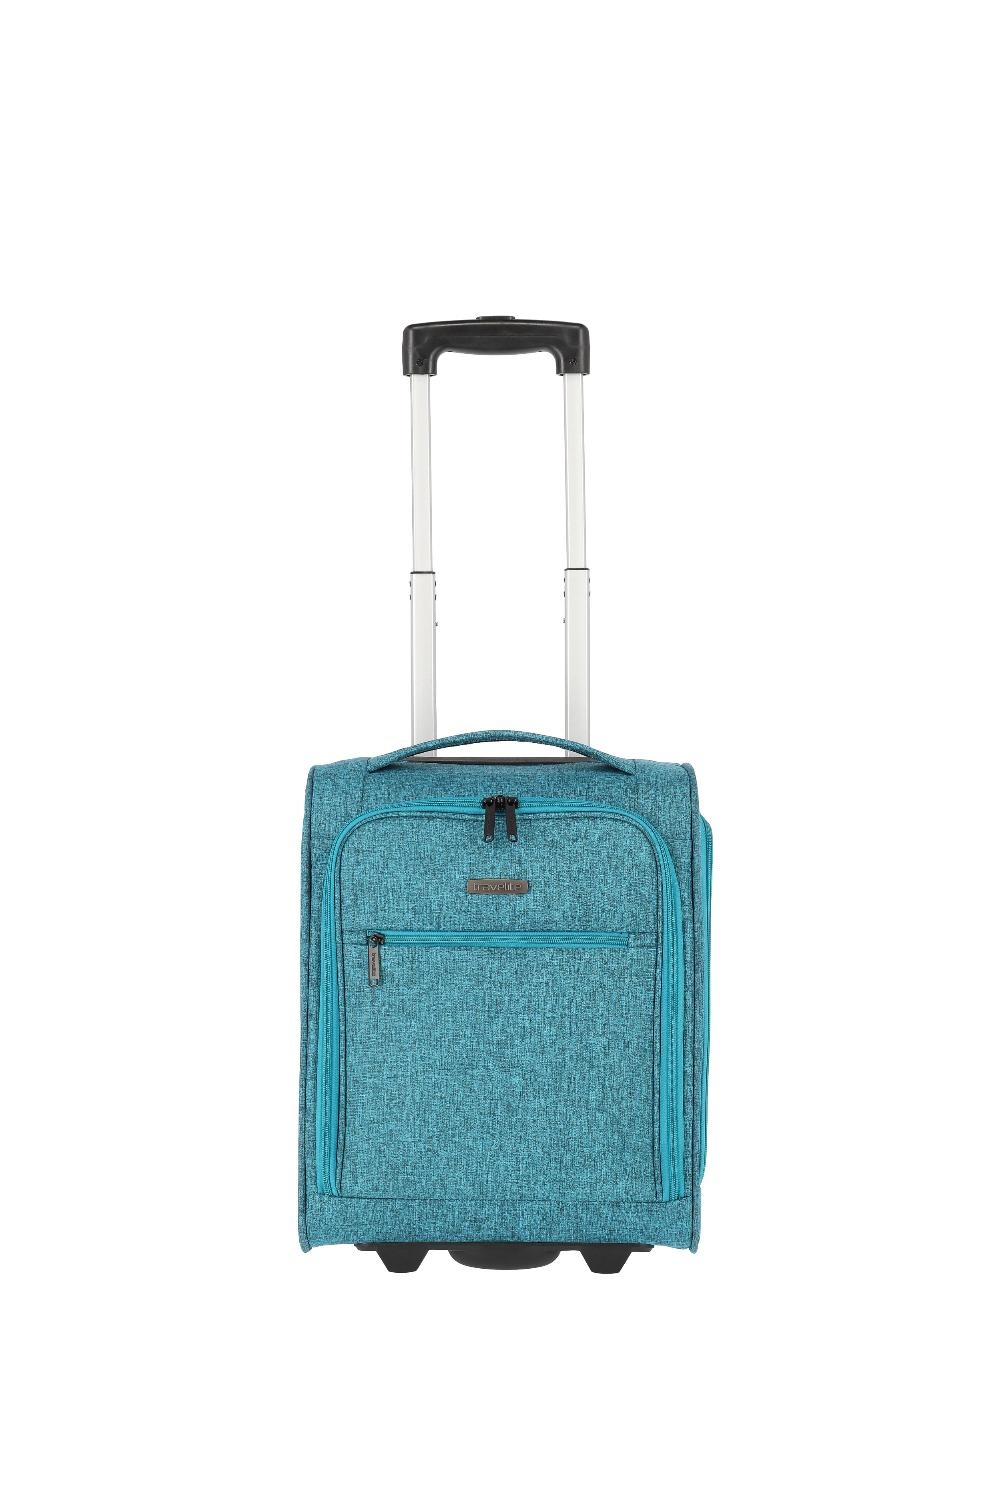 Travelite Handbagage zachte koffer / Trolley / Reiskoffer - Cabin - 43 cm - Blauw